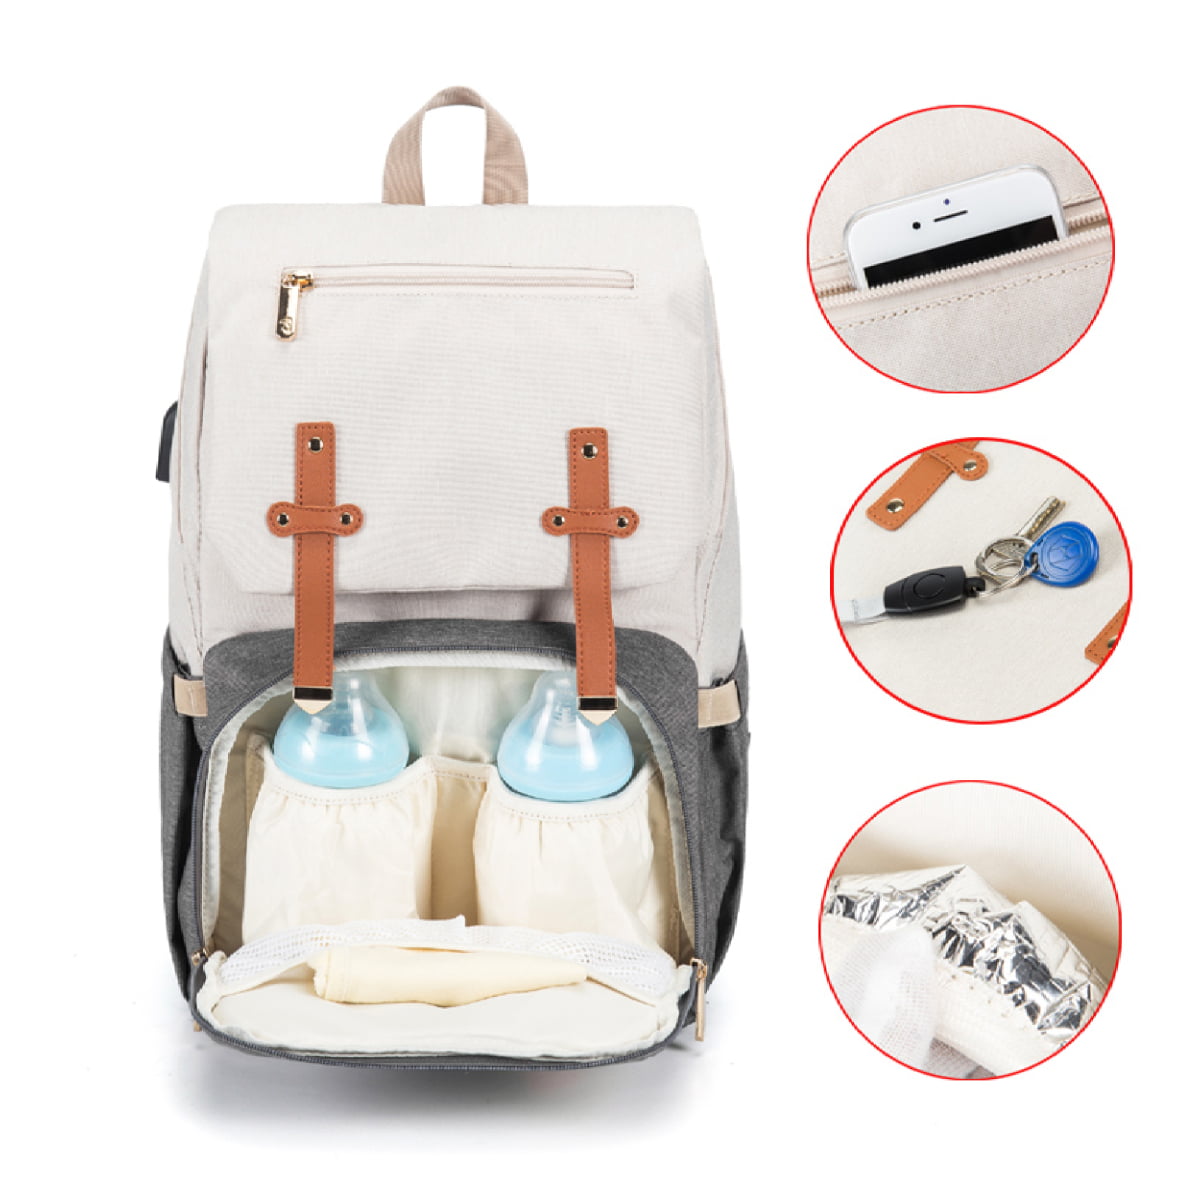 EZGO Oxford Diaper Bag Backpack with USB Charging Port Nursing Bag 